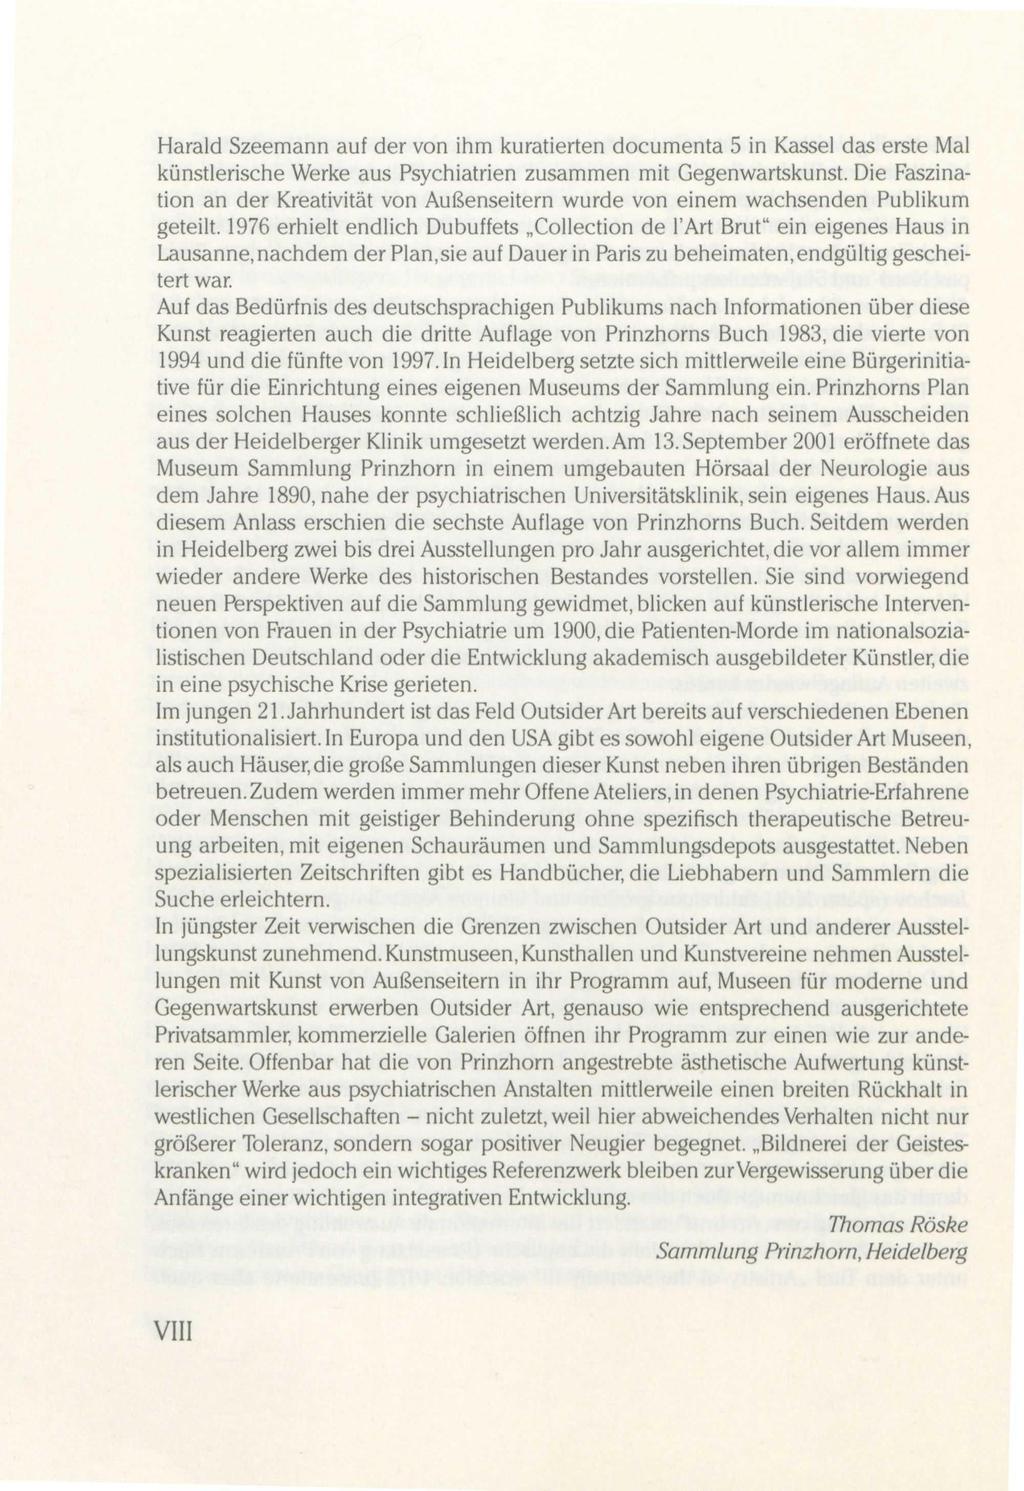 Harald Szeemann auf der von ihm kuratierten documenta 5 in Kassel das erste Mal künstlerische Werke aus Psychiatrien zusammen mit Gegenwartskunst.